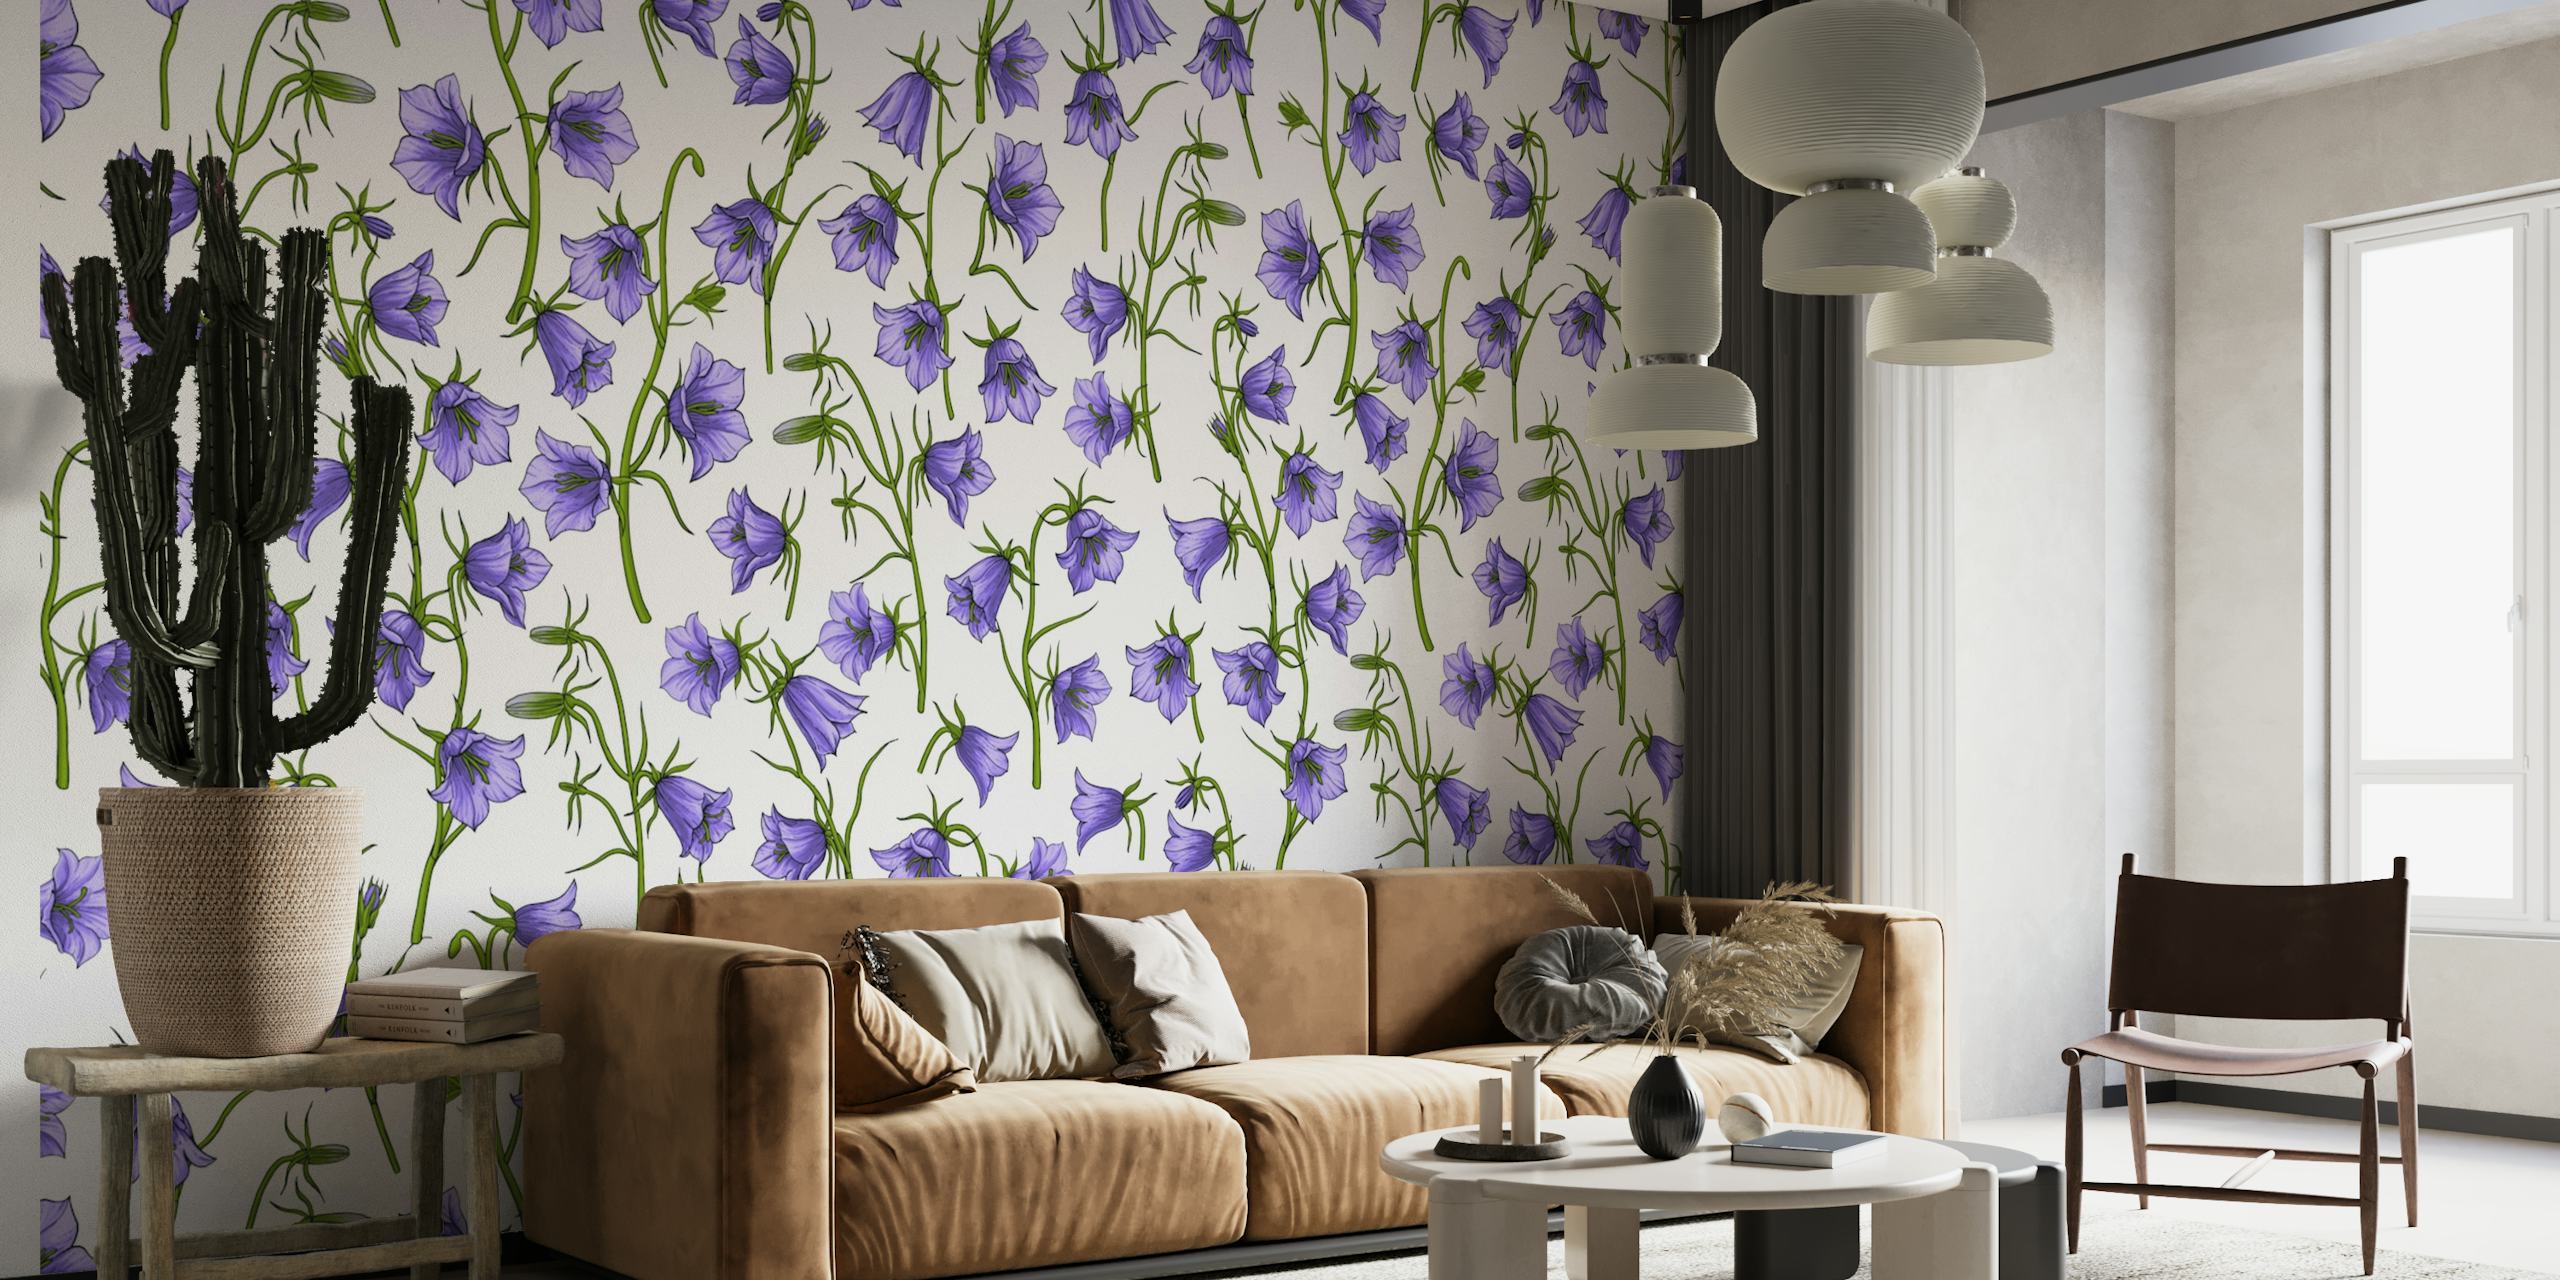 Klokkeblomster i violet vægmaleri med et gentaget mønster af violette klokkeformede blomster på en hvid baggrund